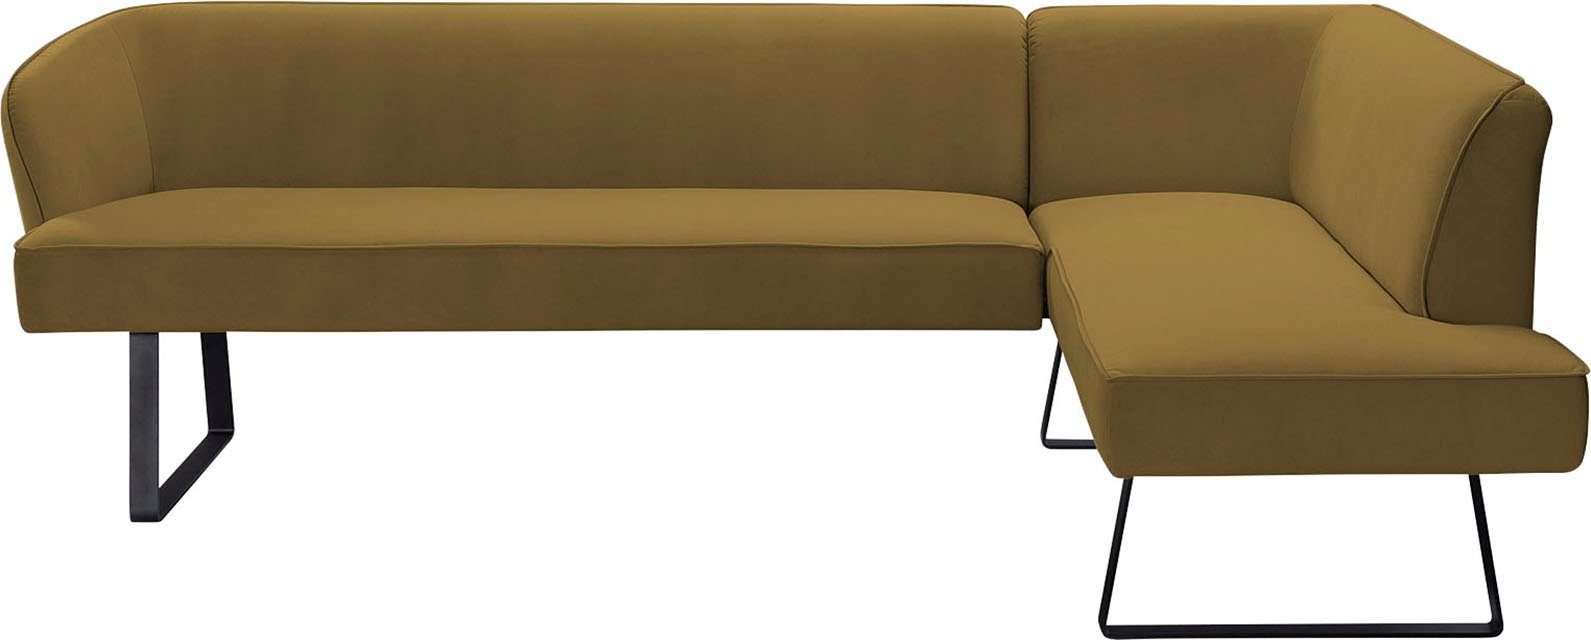 Americano, - verschiedenen fashion in und Qualitäten mit Bezug sofa Metallfüßen, Eckbank exxpo Keder